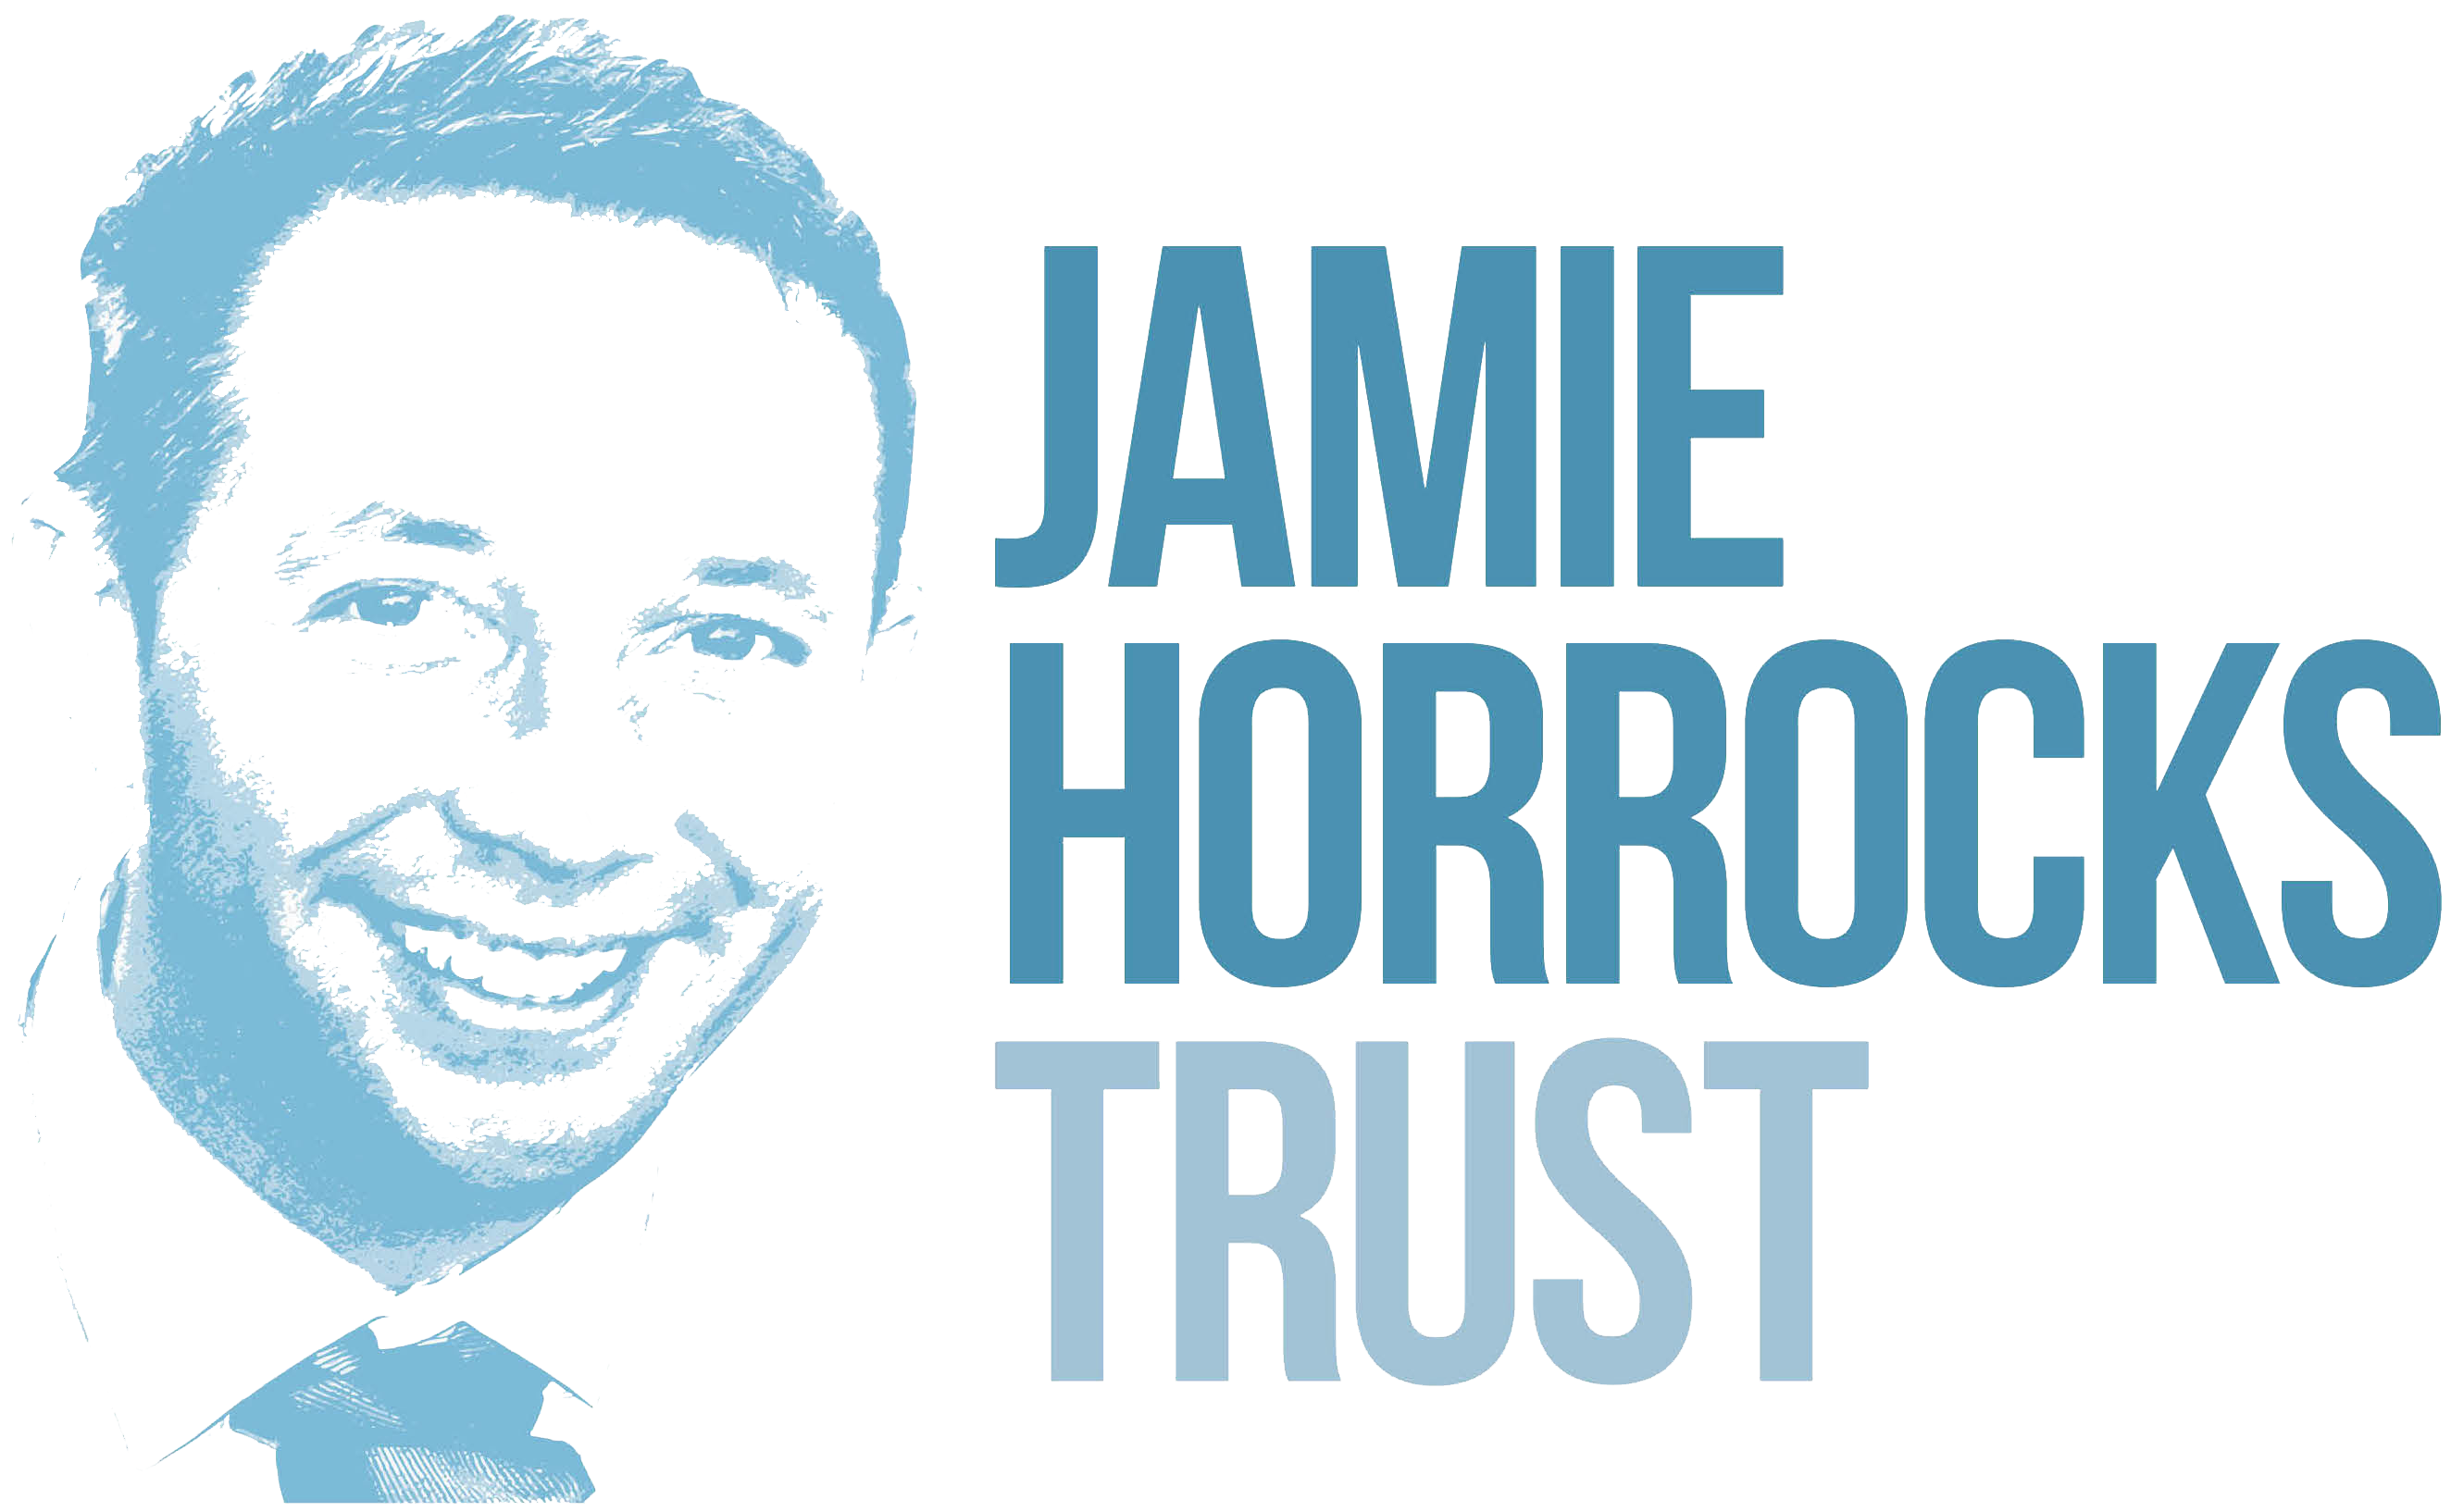 Jamie Horrocks Trust
